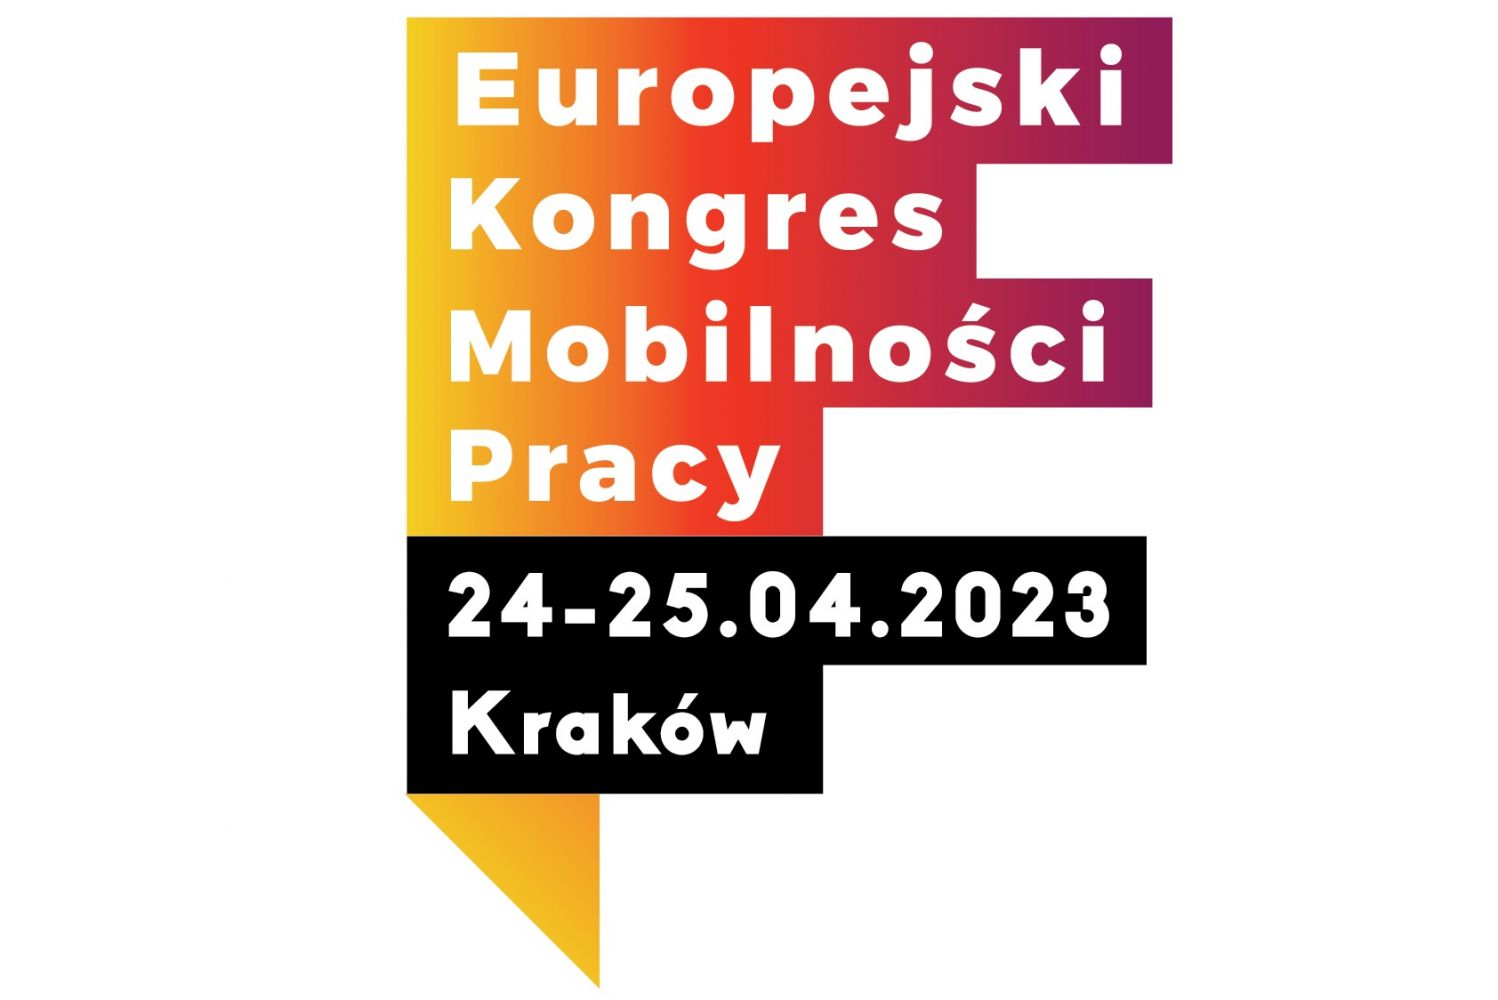 Europejski Kongres Mobilności Pracy (EKMP)